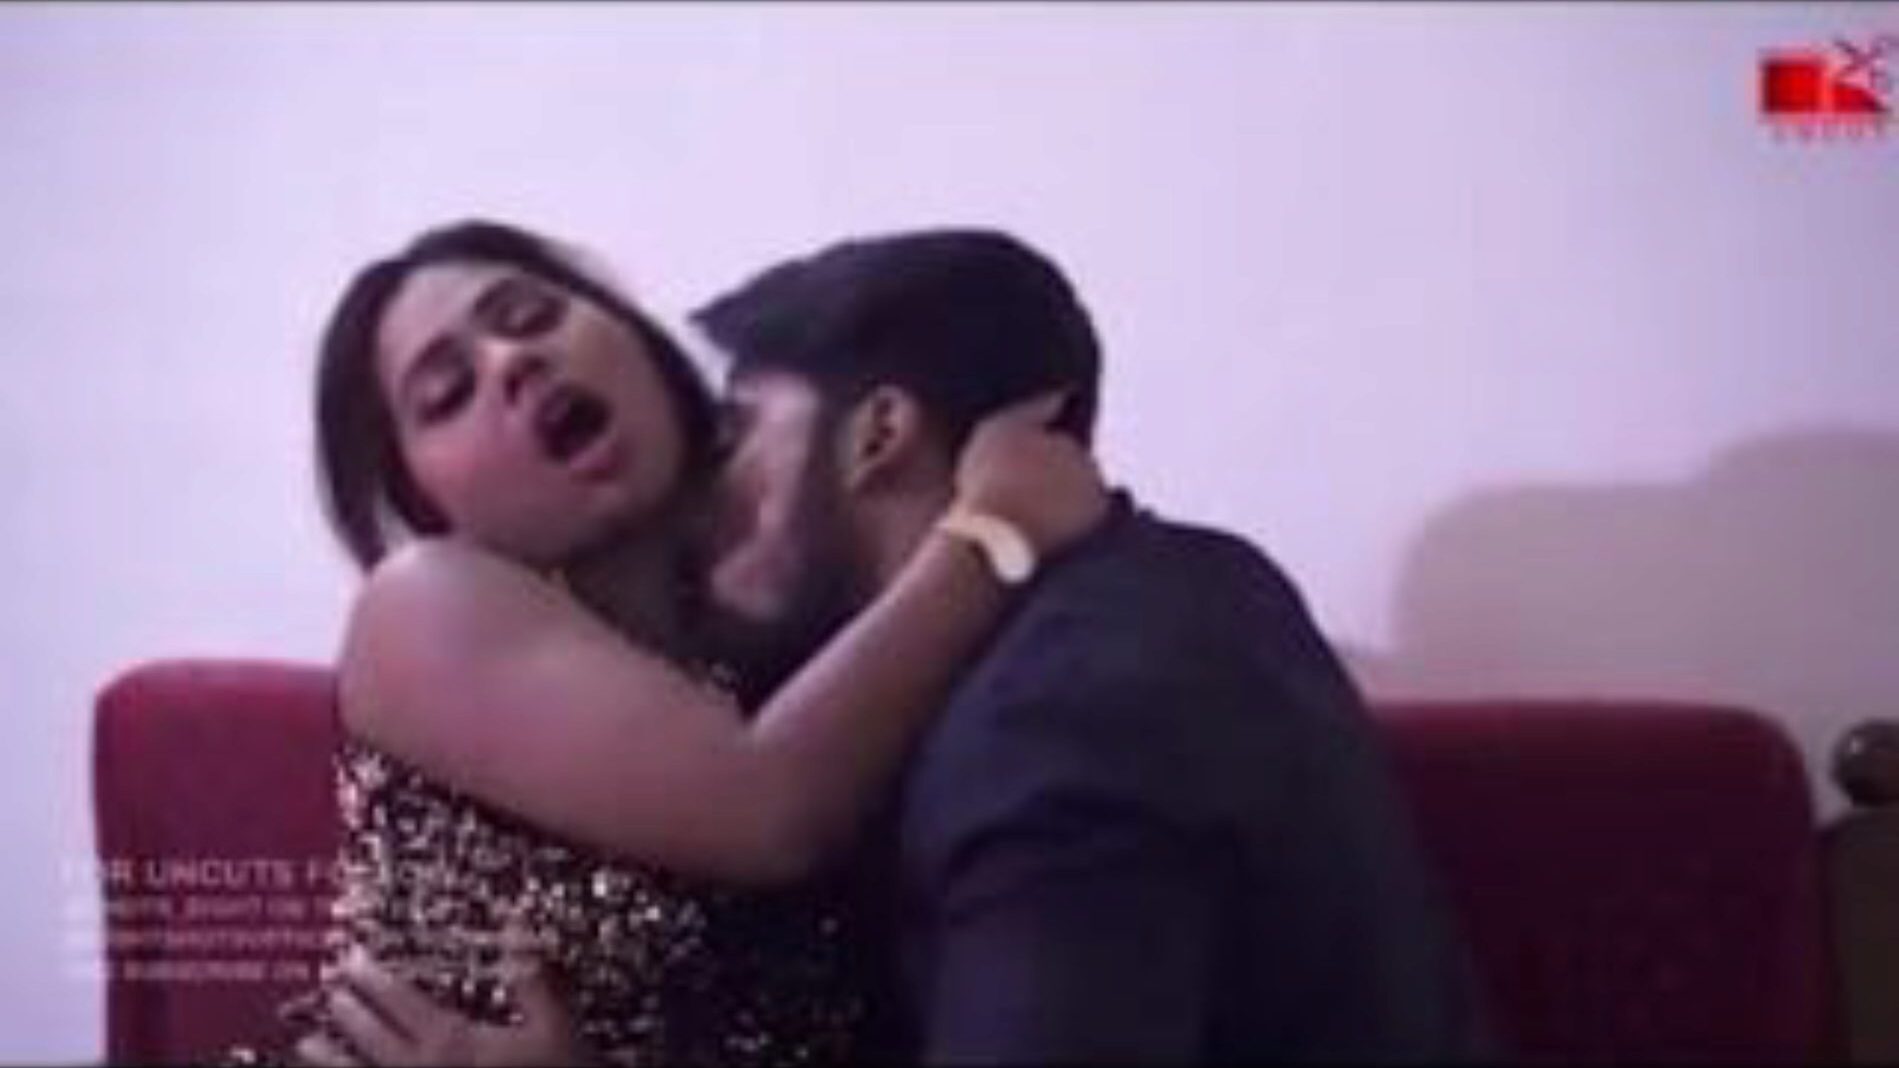 indische Frau vor Ehemann Hindi Chudai gefickt ... sehen Sie indische Frau vor Ehemann Hindi Chudai Film auf Xhamster gefickt - die ultimative Schar von kostenlosen asiatischen indischen xxx kostenlose Pornografie Tube Videos